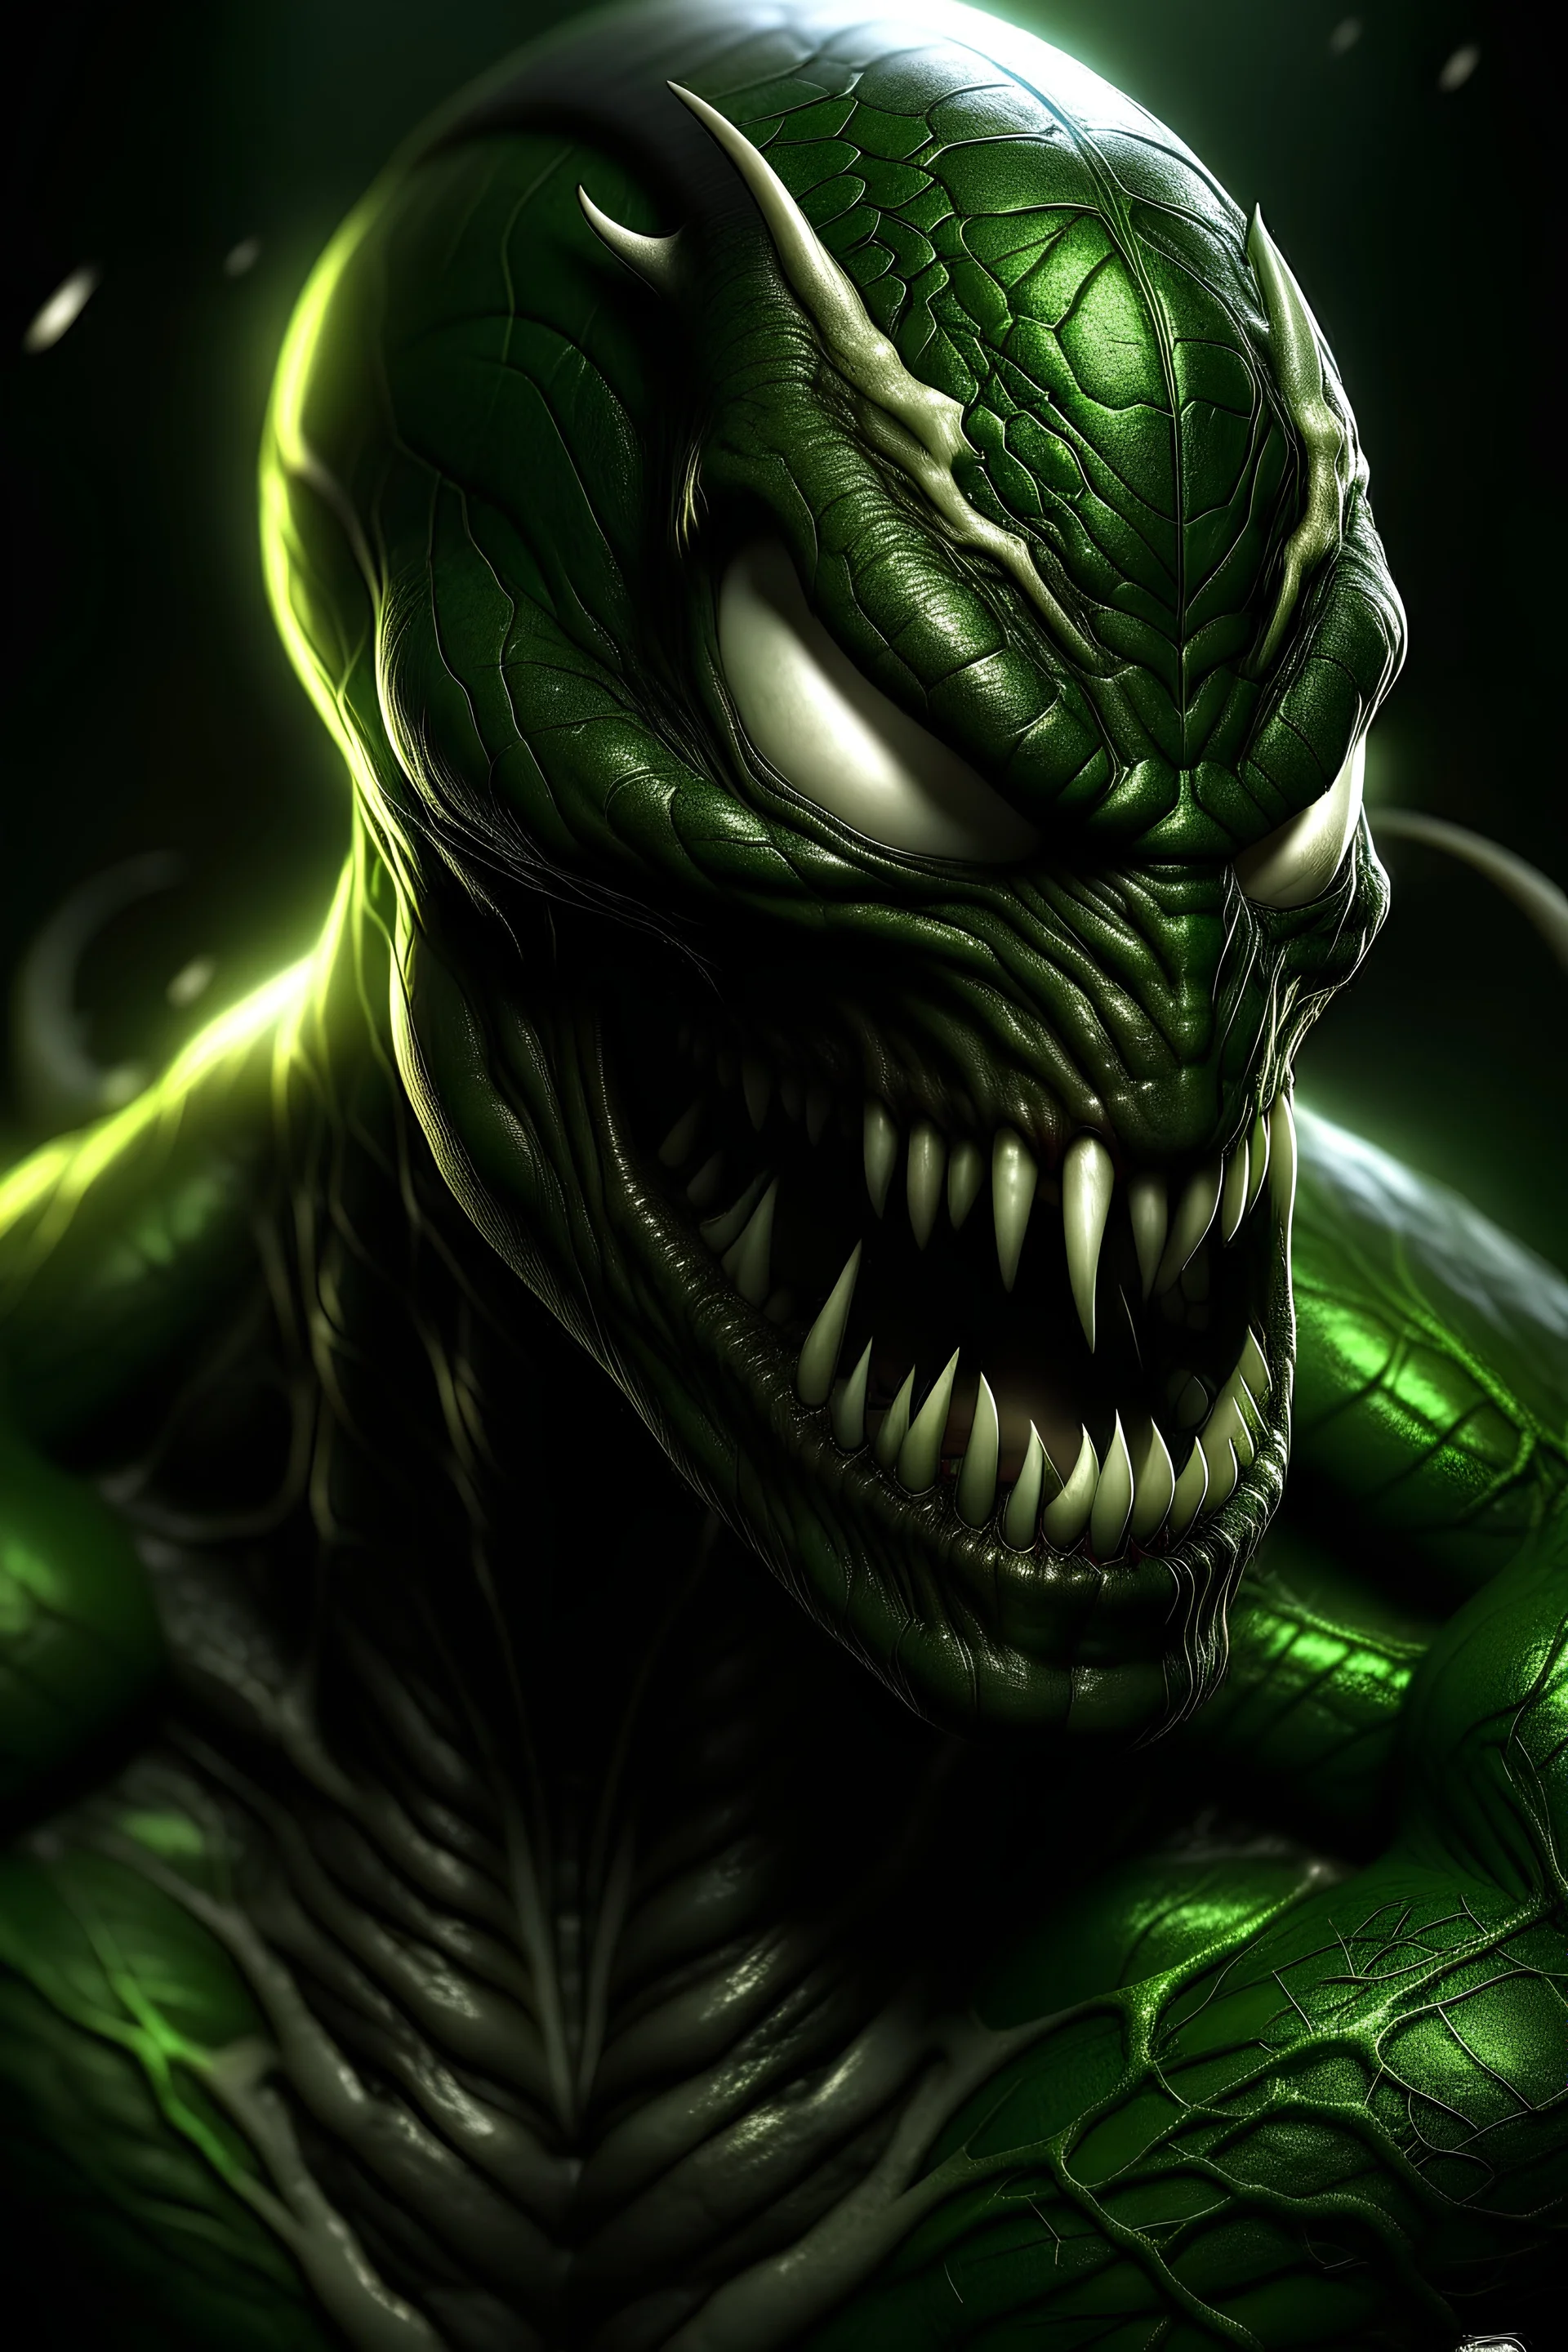 Portrait von Venom aus dem Spiderman universum, seine haut ist grün